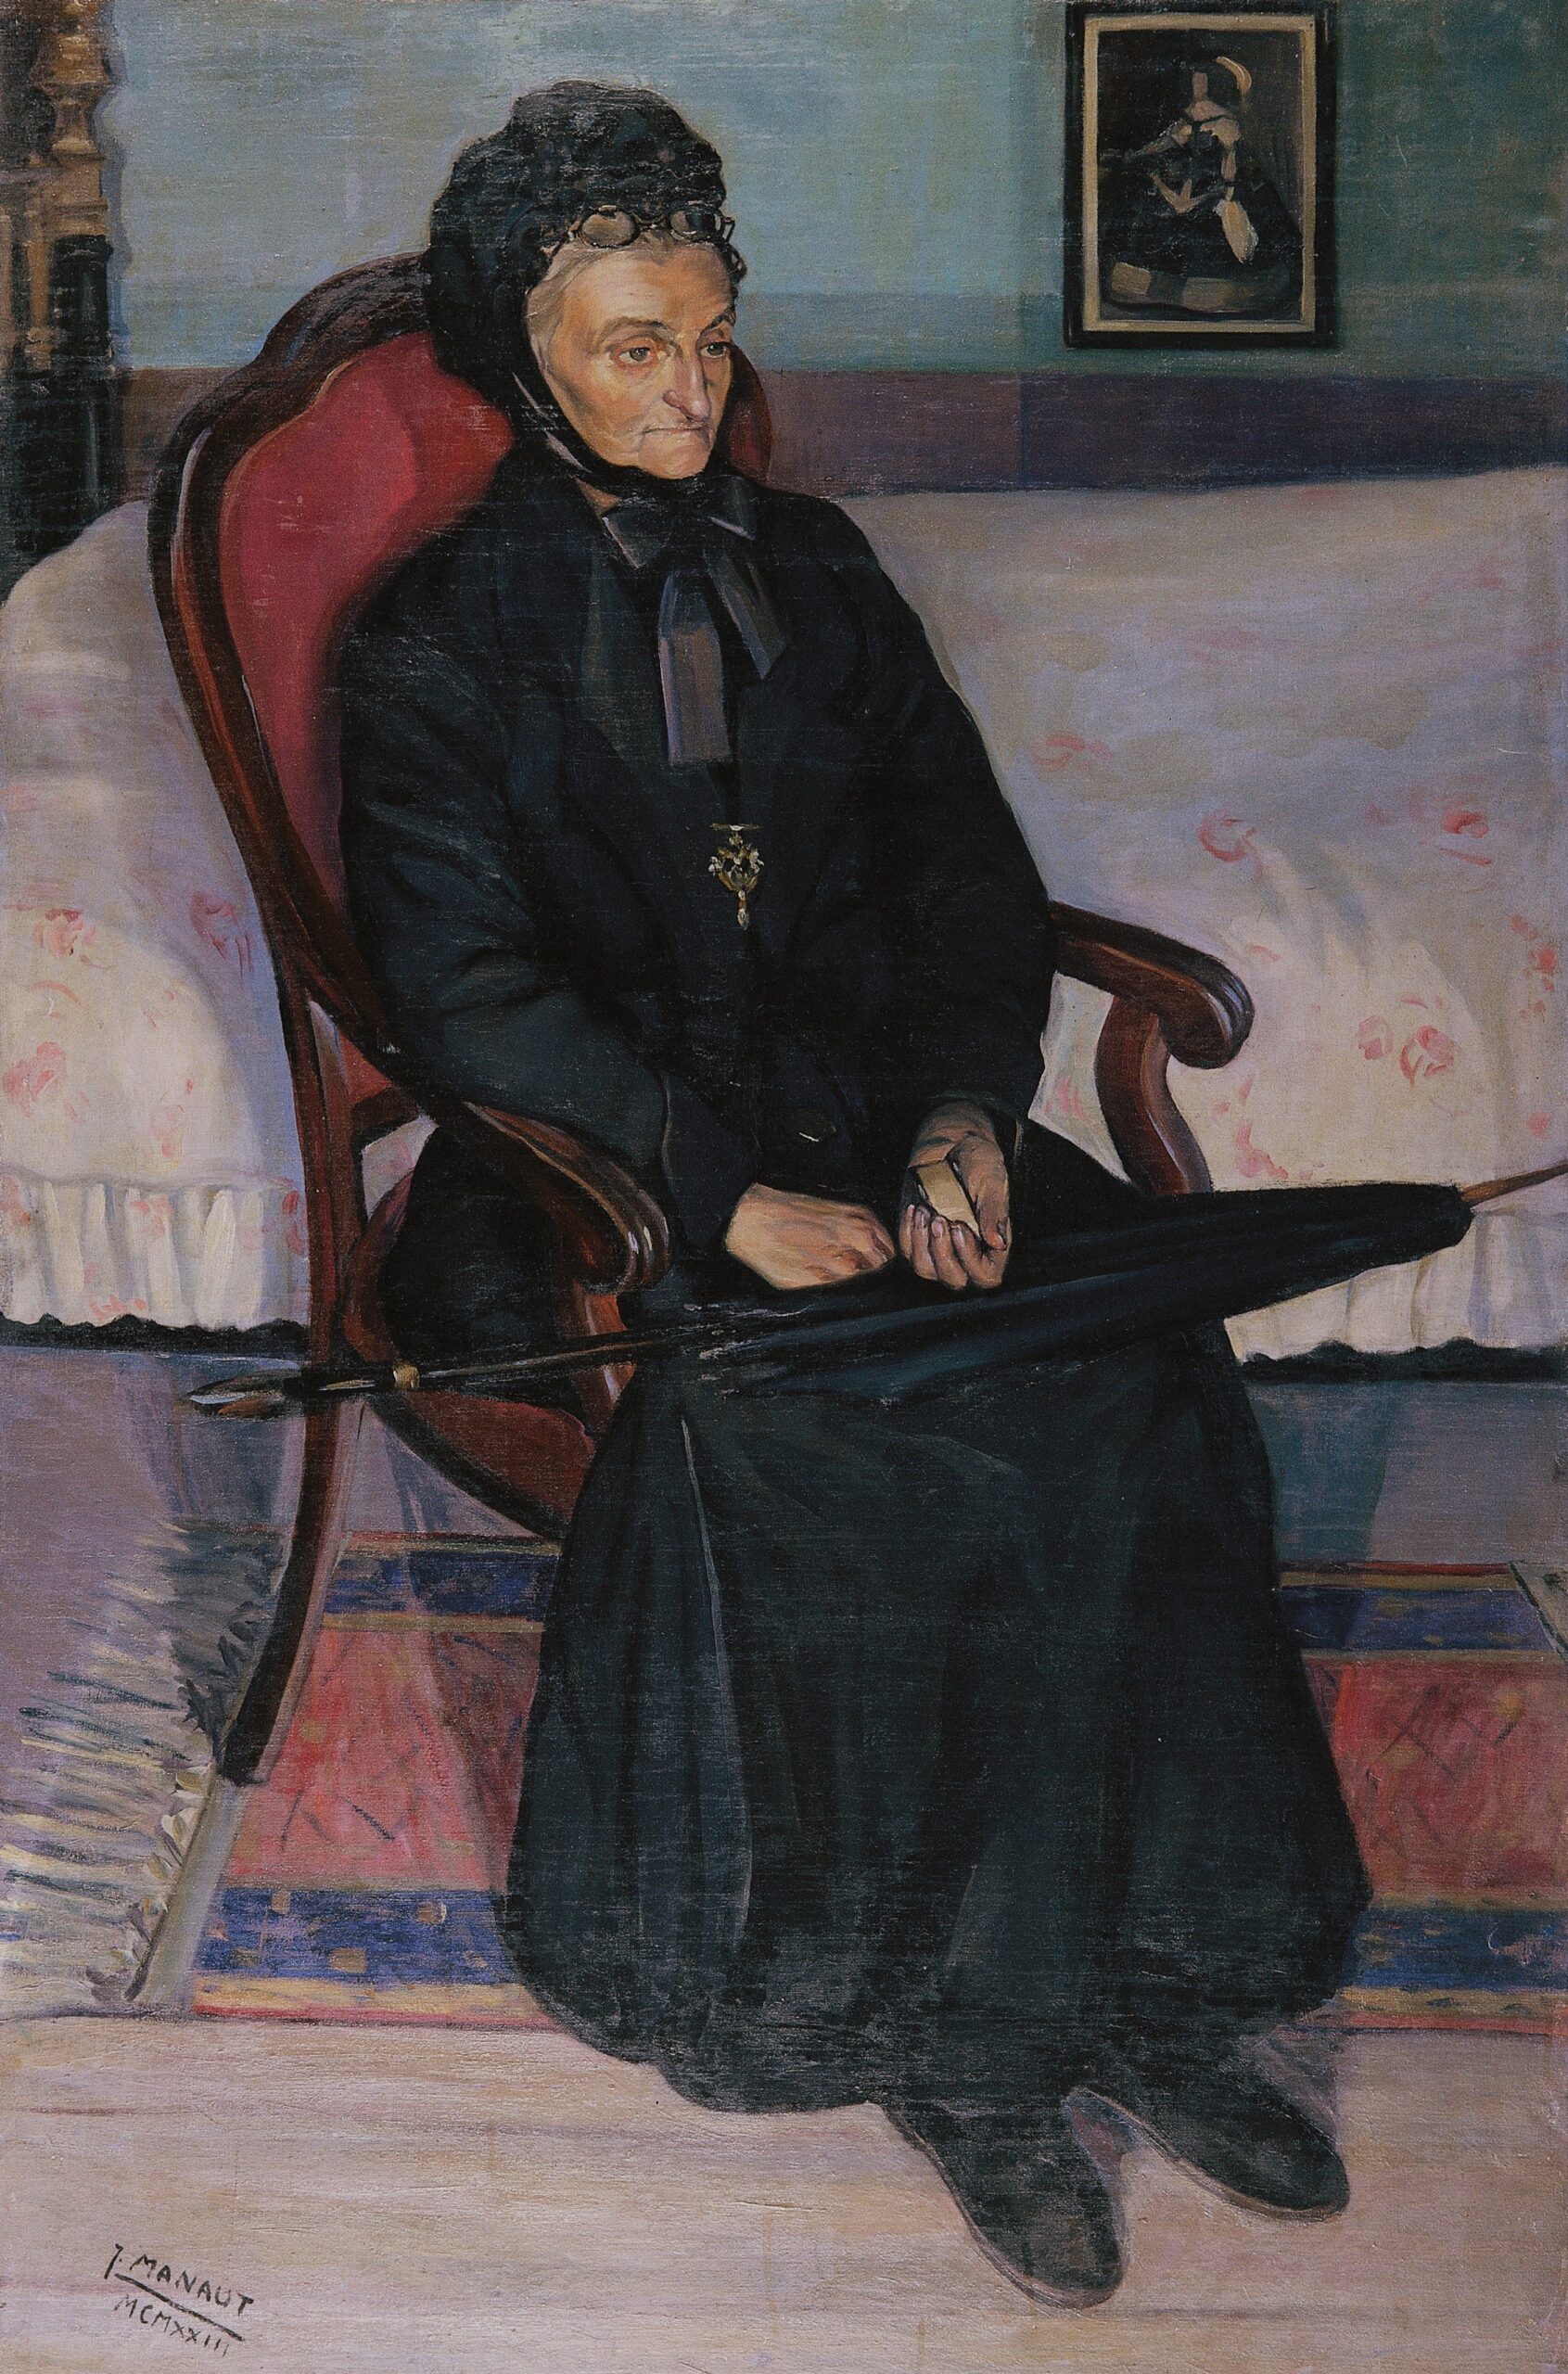 Pintura de José Manaut titulada Retrato de Mme. Fauré, París, 1923. Óleo sobre cartón.